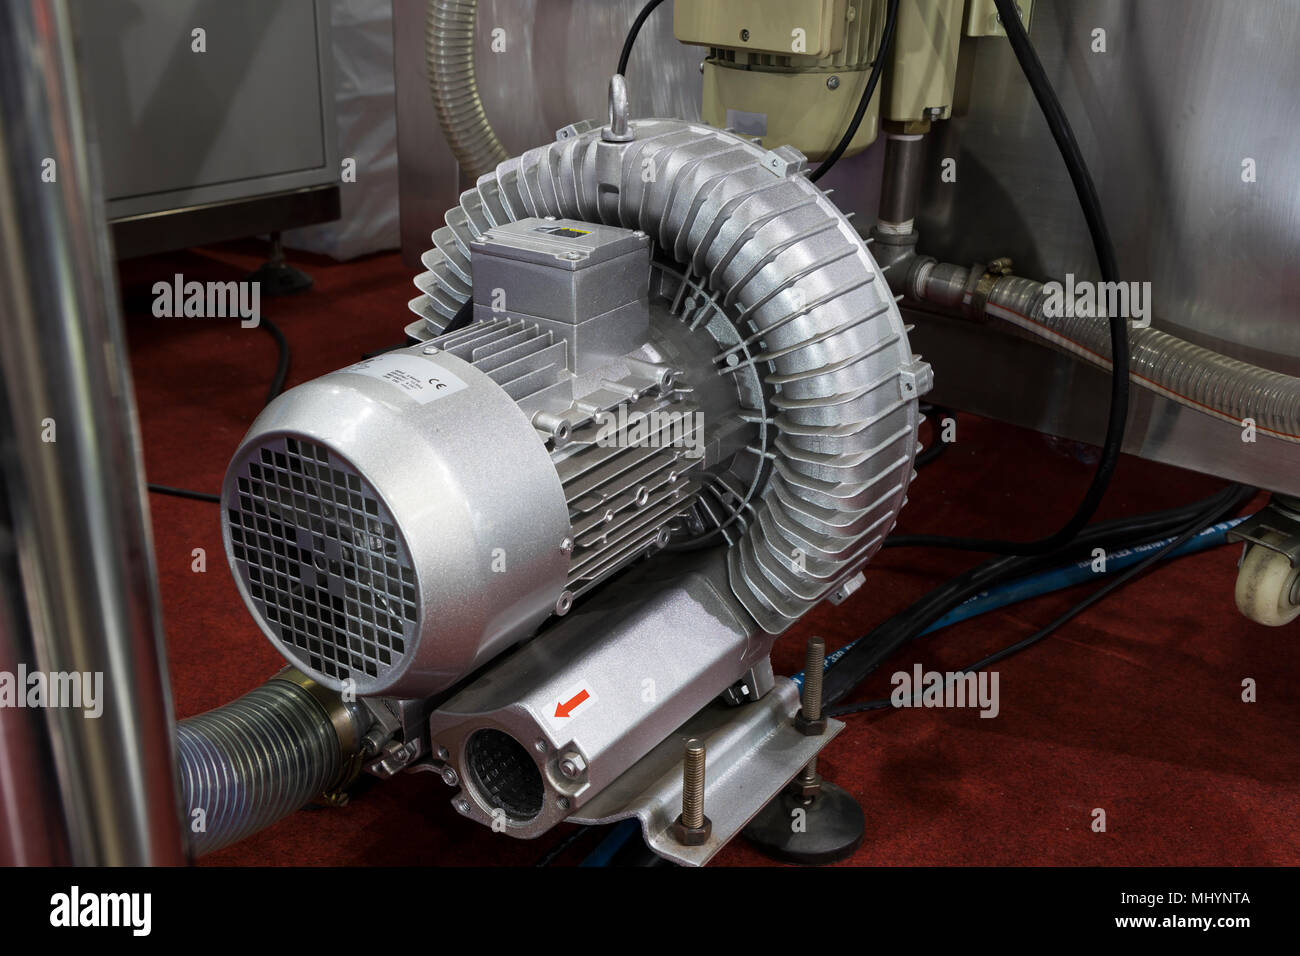 Pumpe der Absaugung verschmutzter Luft aus Machne Stockfotografie - Alamy